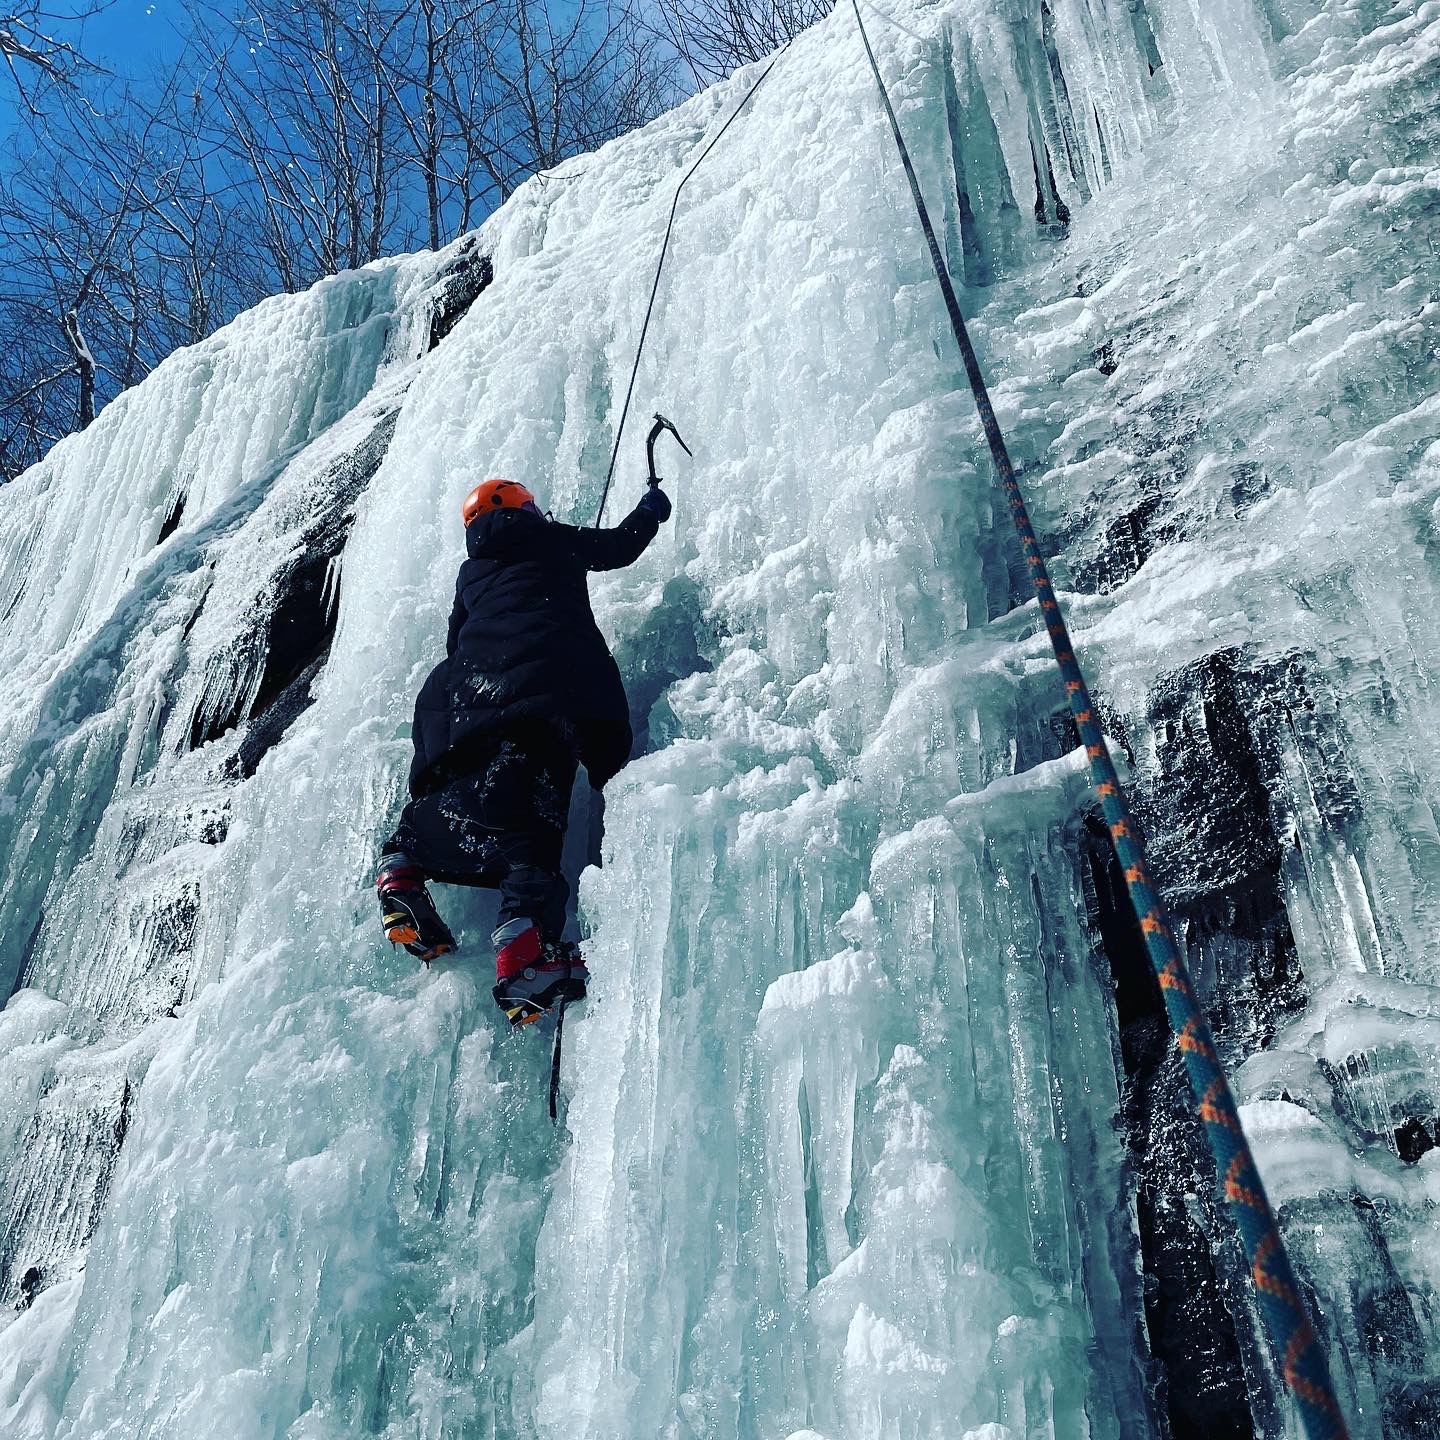 a student ice climbs